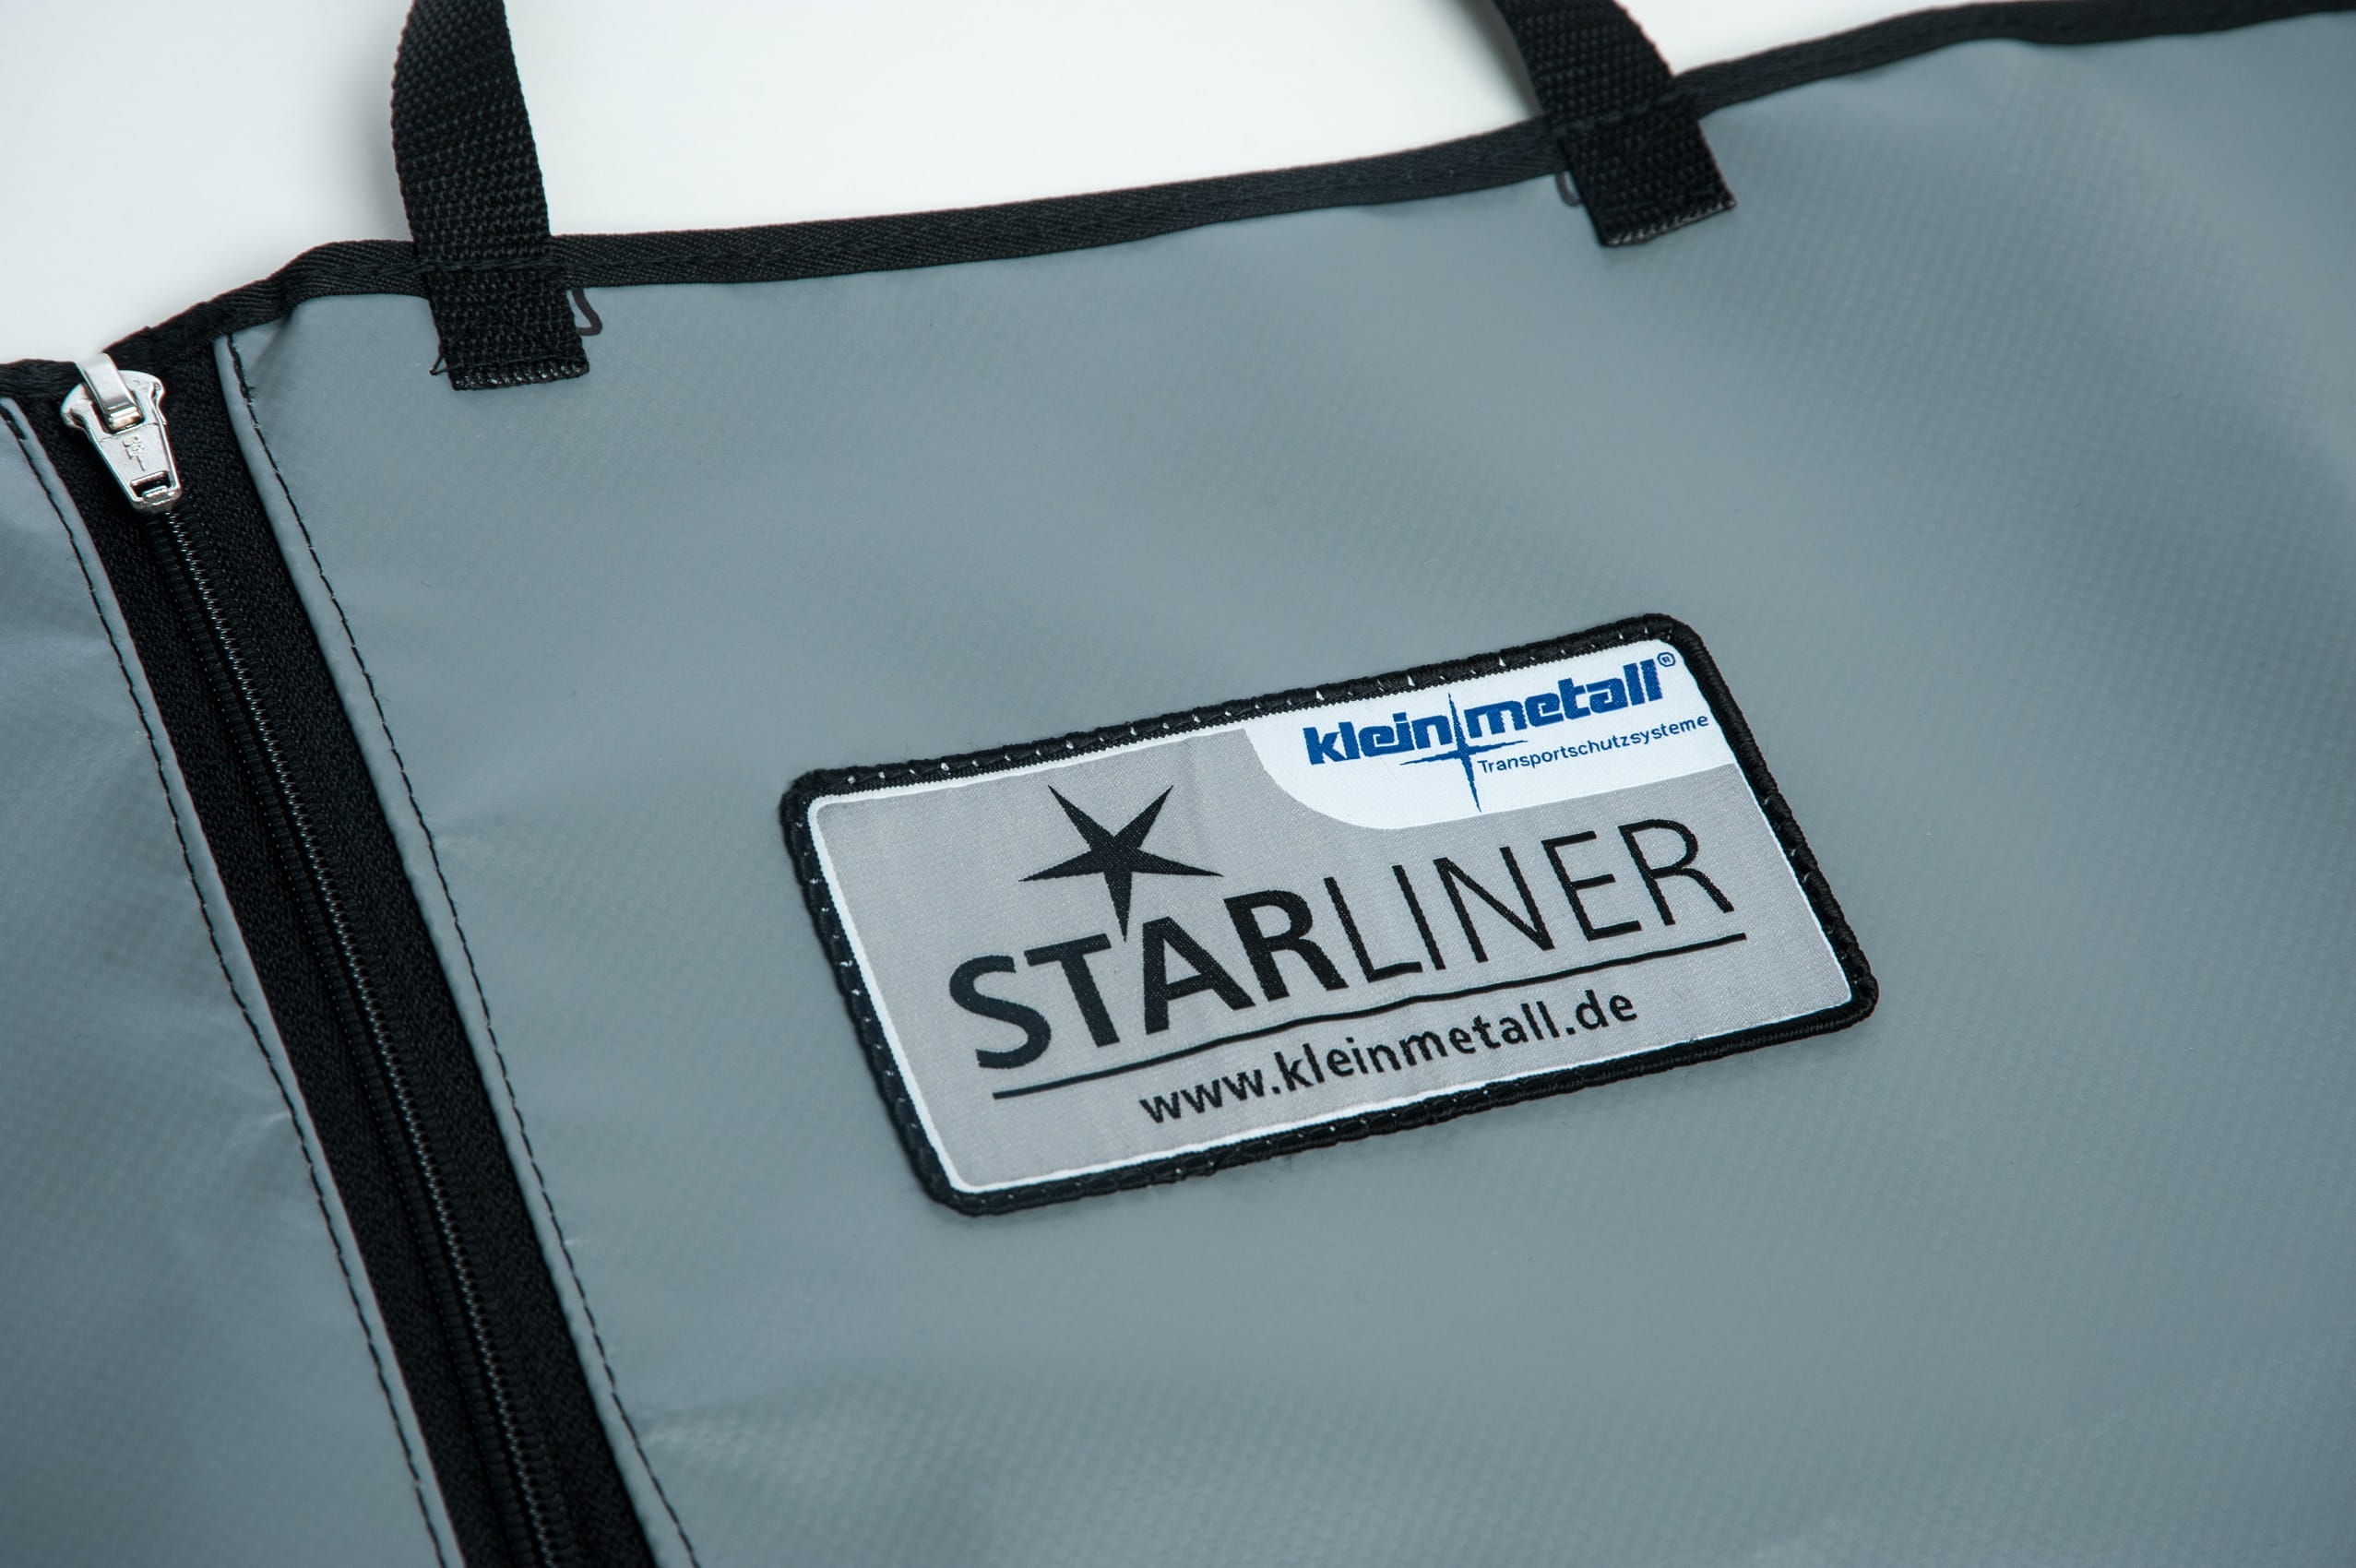 Starliner Kofferraumwanne grau für Skoda Roomster, Bj. 2006 - 2015 |  SL08110G